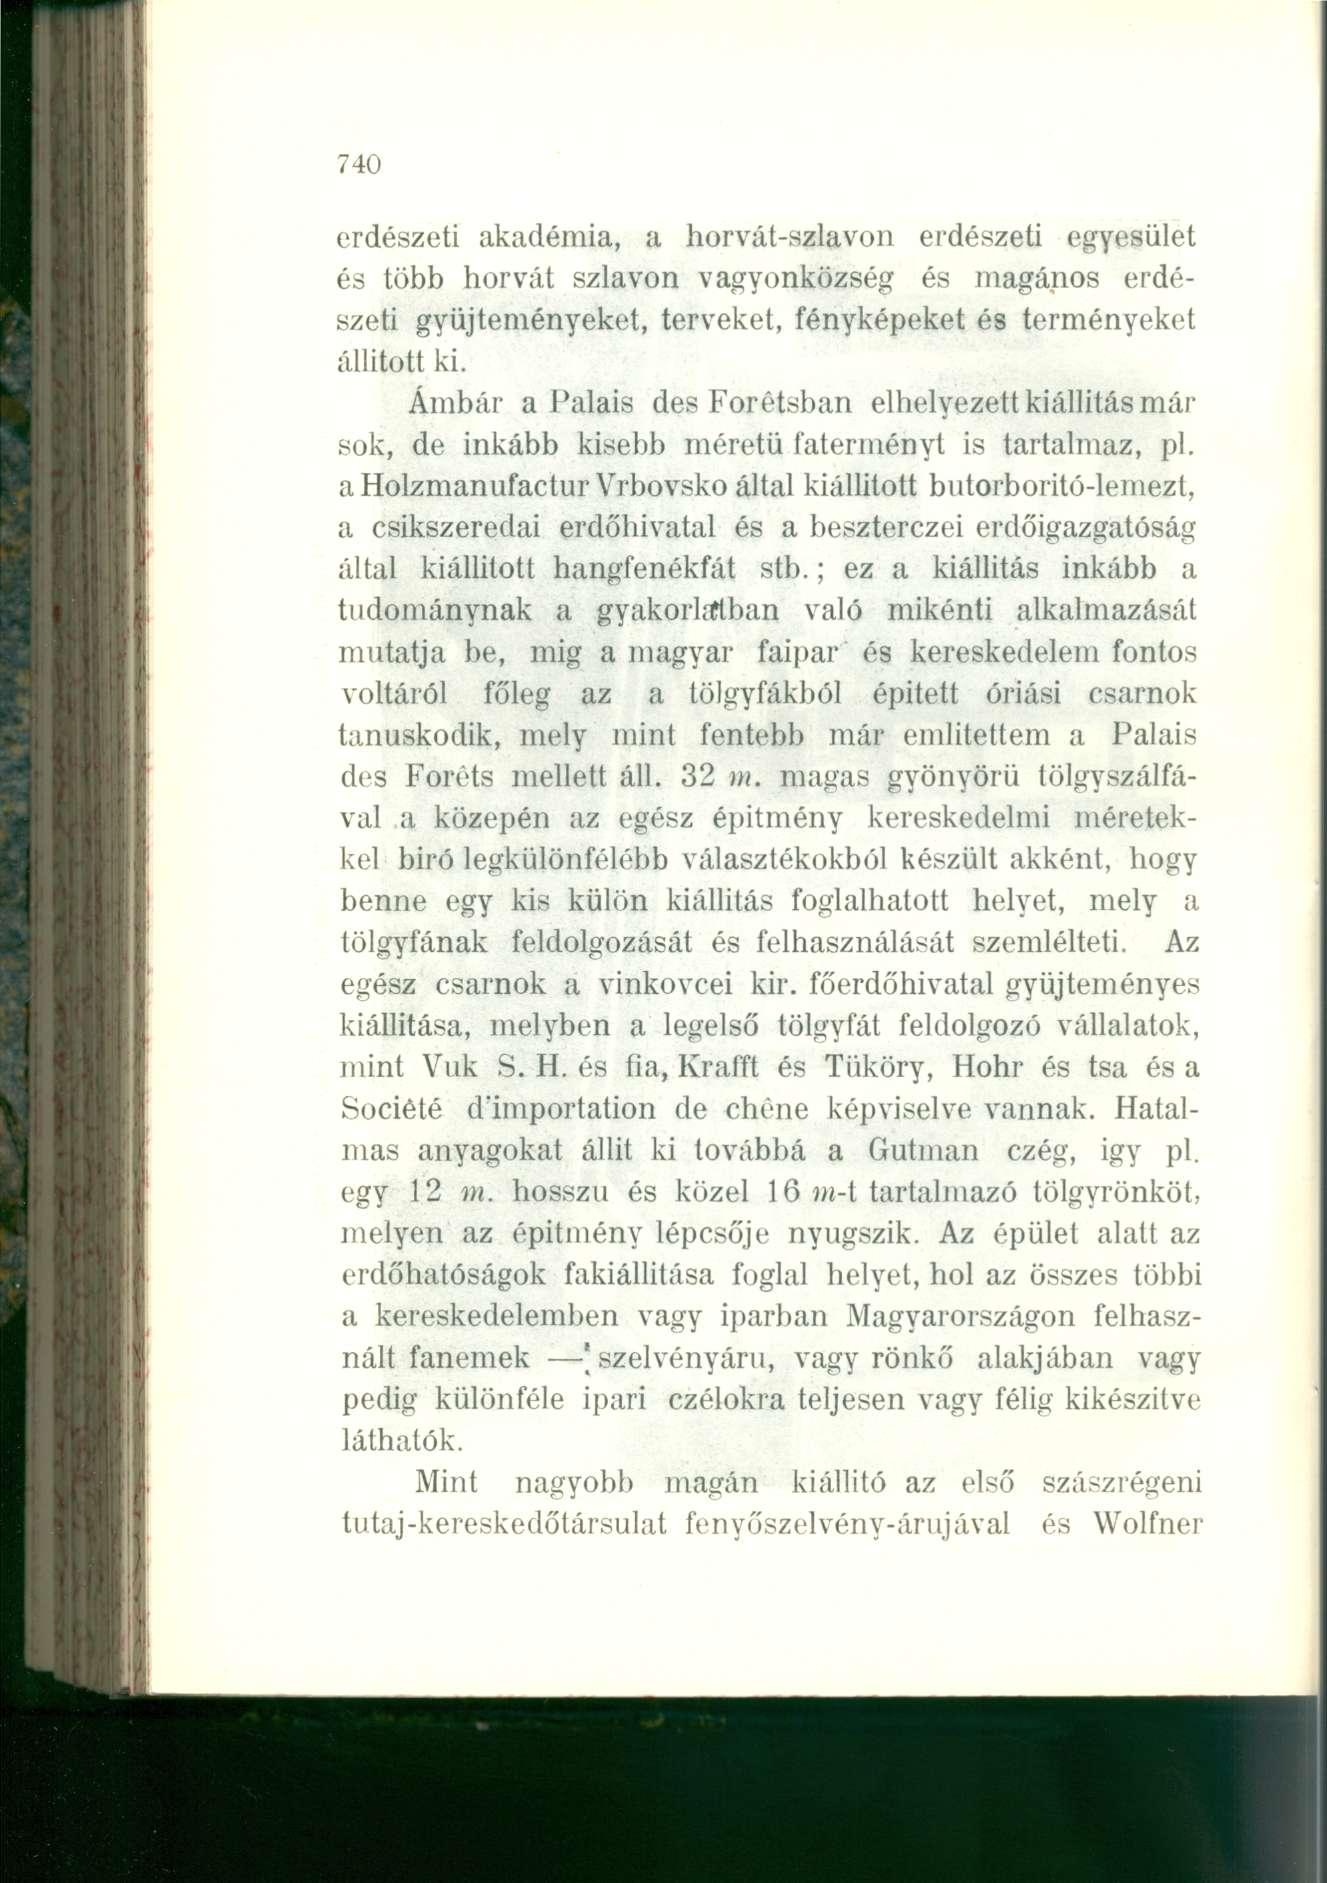 740 erdészeti akadémia, a horvát-szlavón erdészeti egyesület és több horvát sziavon v agyonközség és magános erdészeti gyűjteményeket, terveket, fényképeket és terményeket állitott ki.